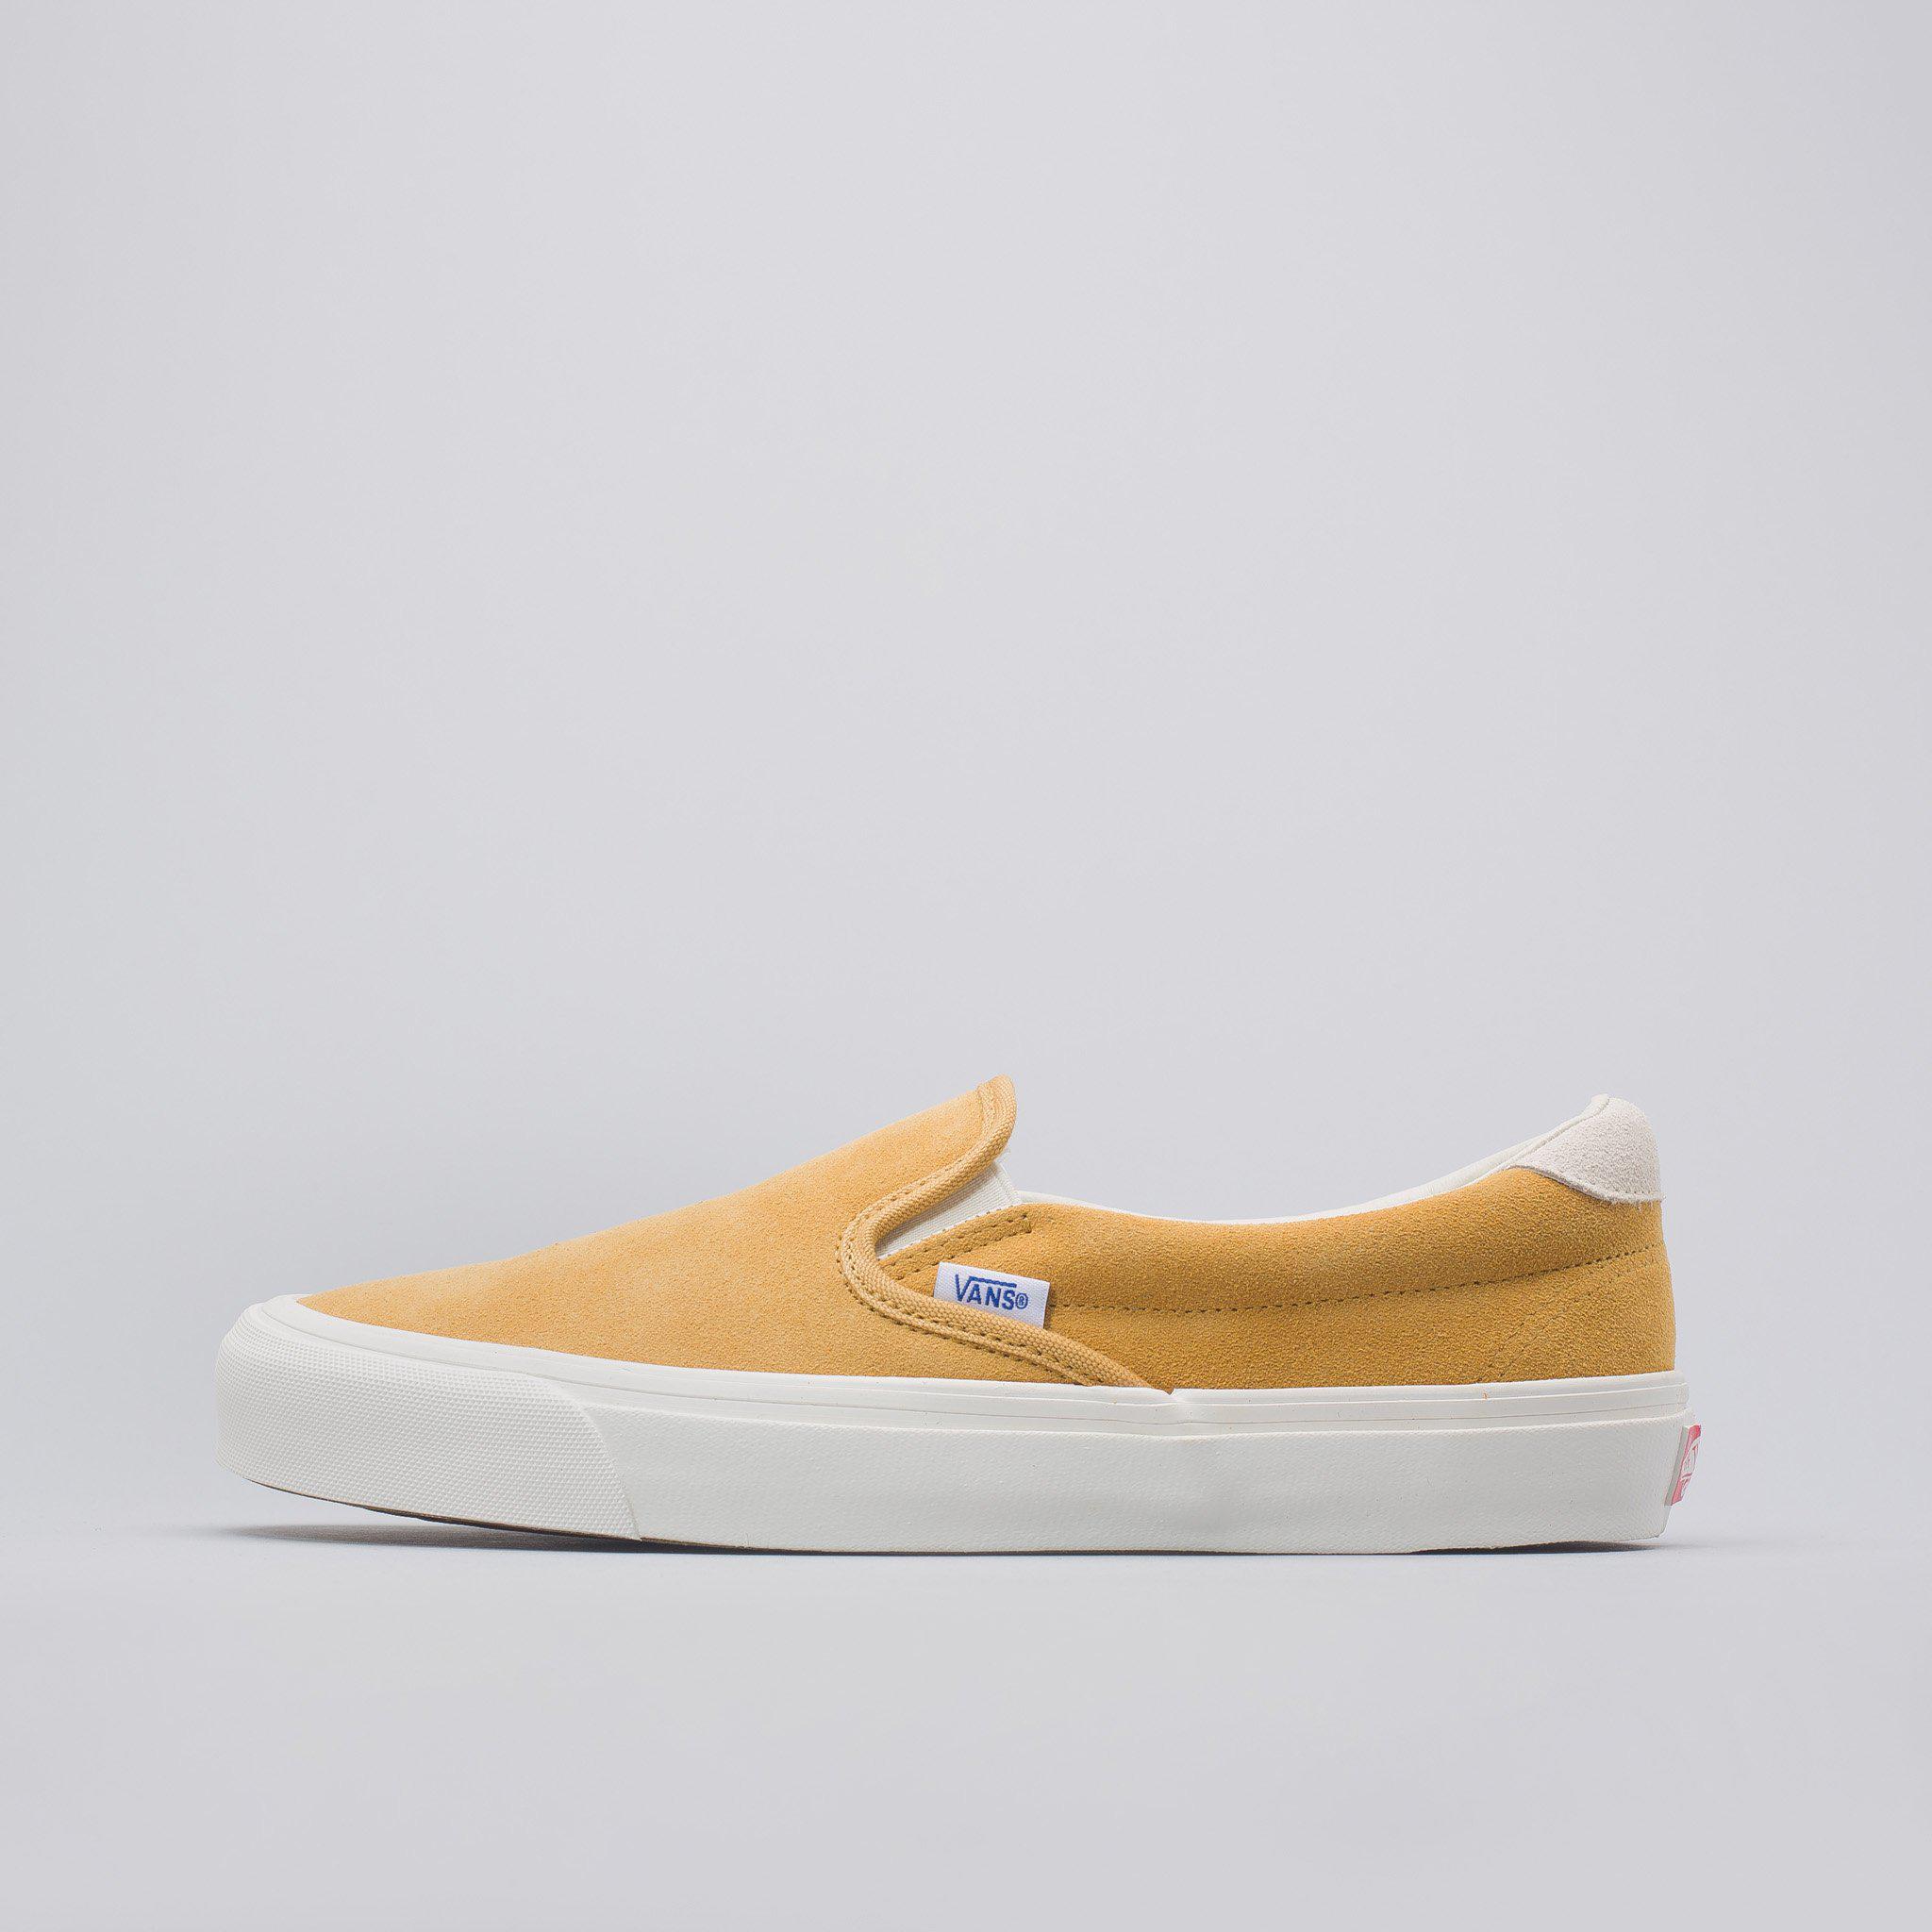 Mens shoes Vans OG Slip-On 59 LX (Suede) Honey Mustard 